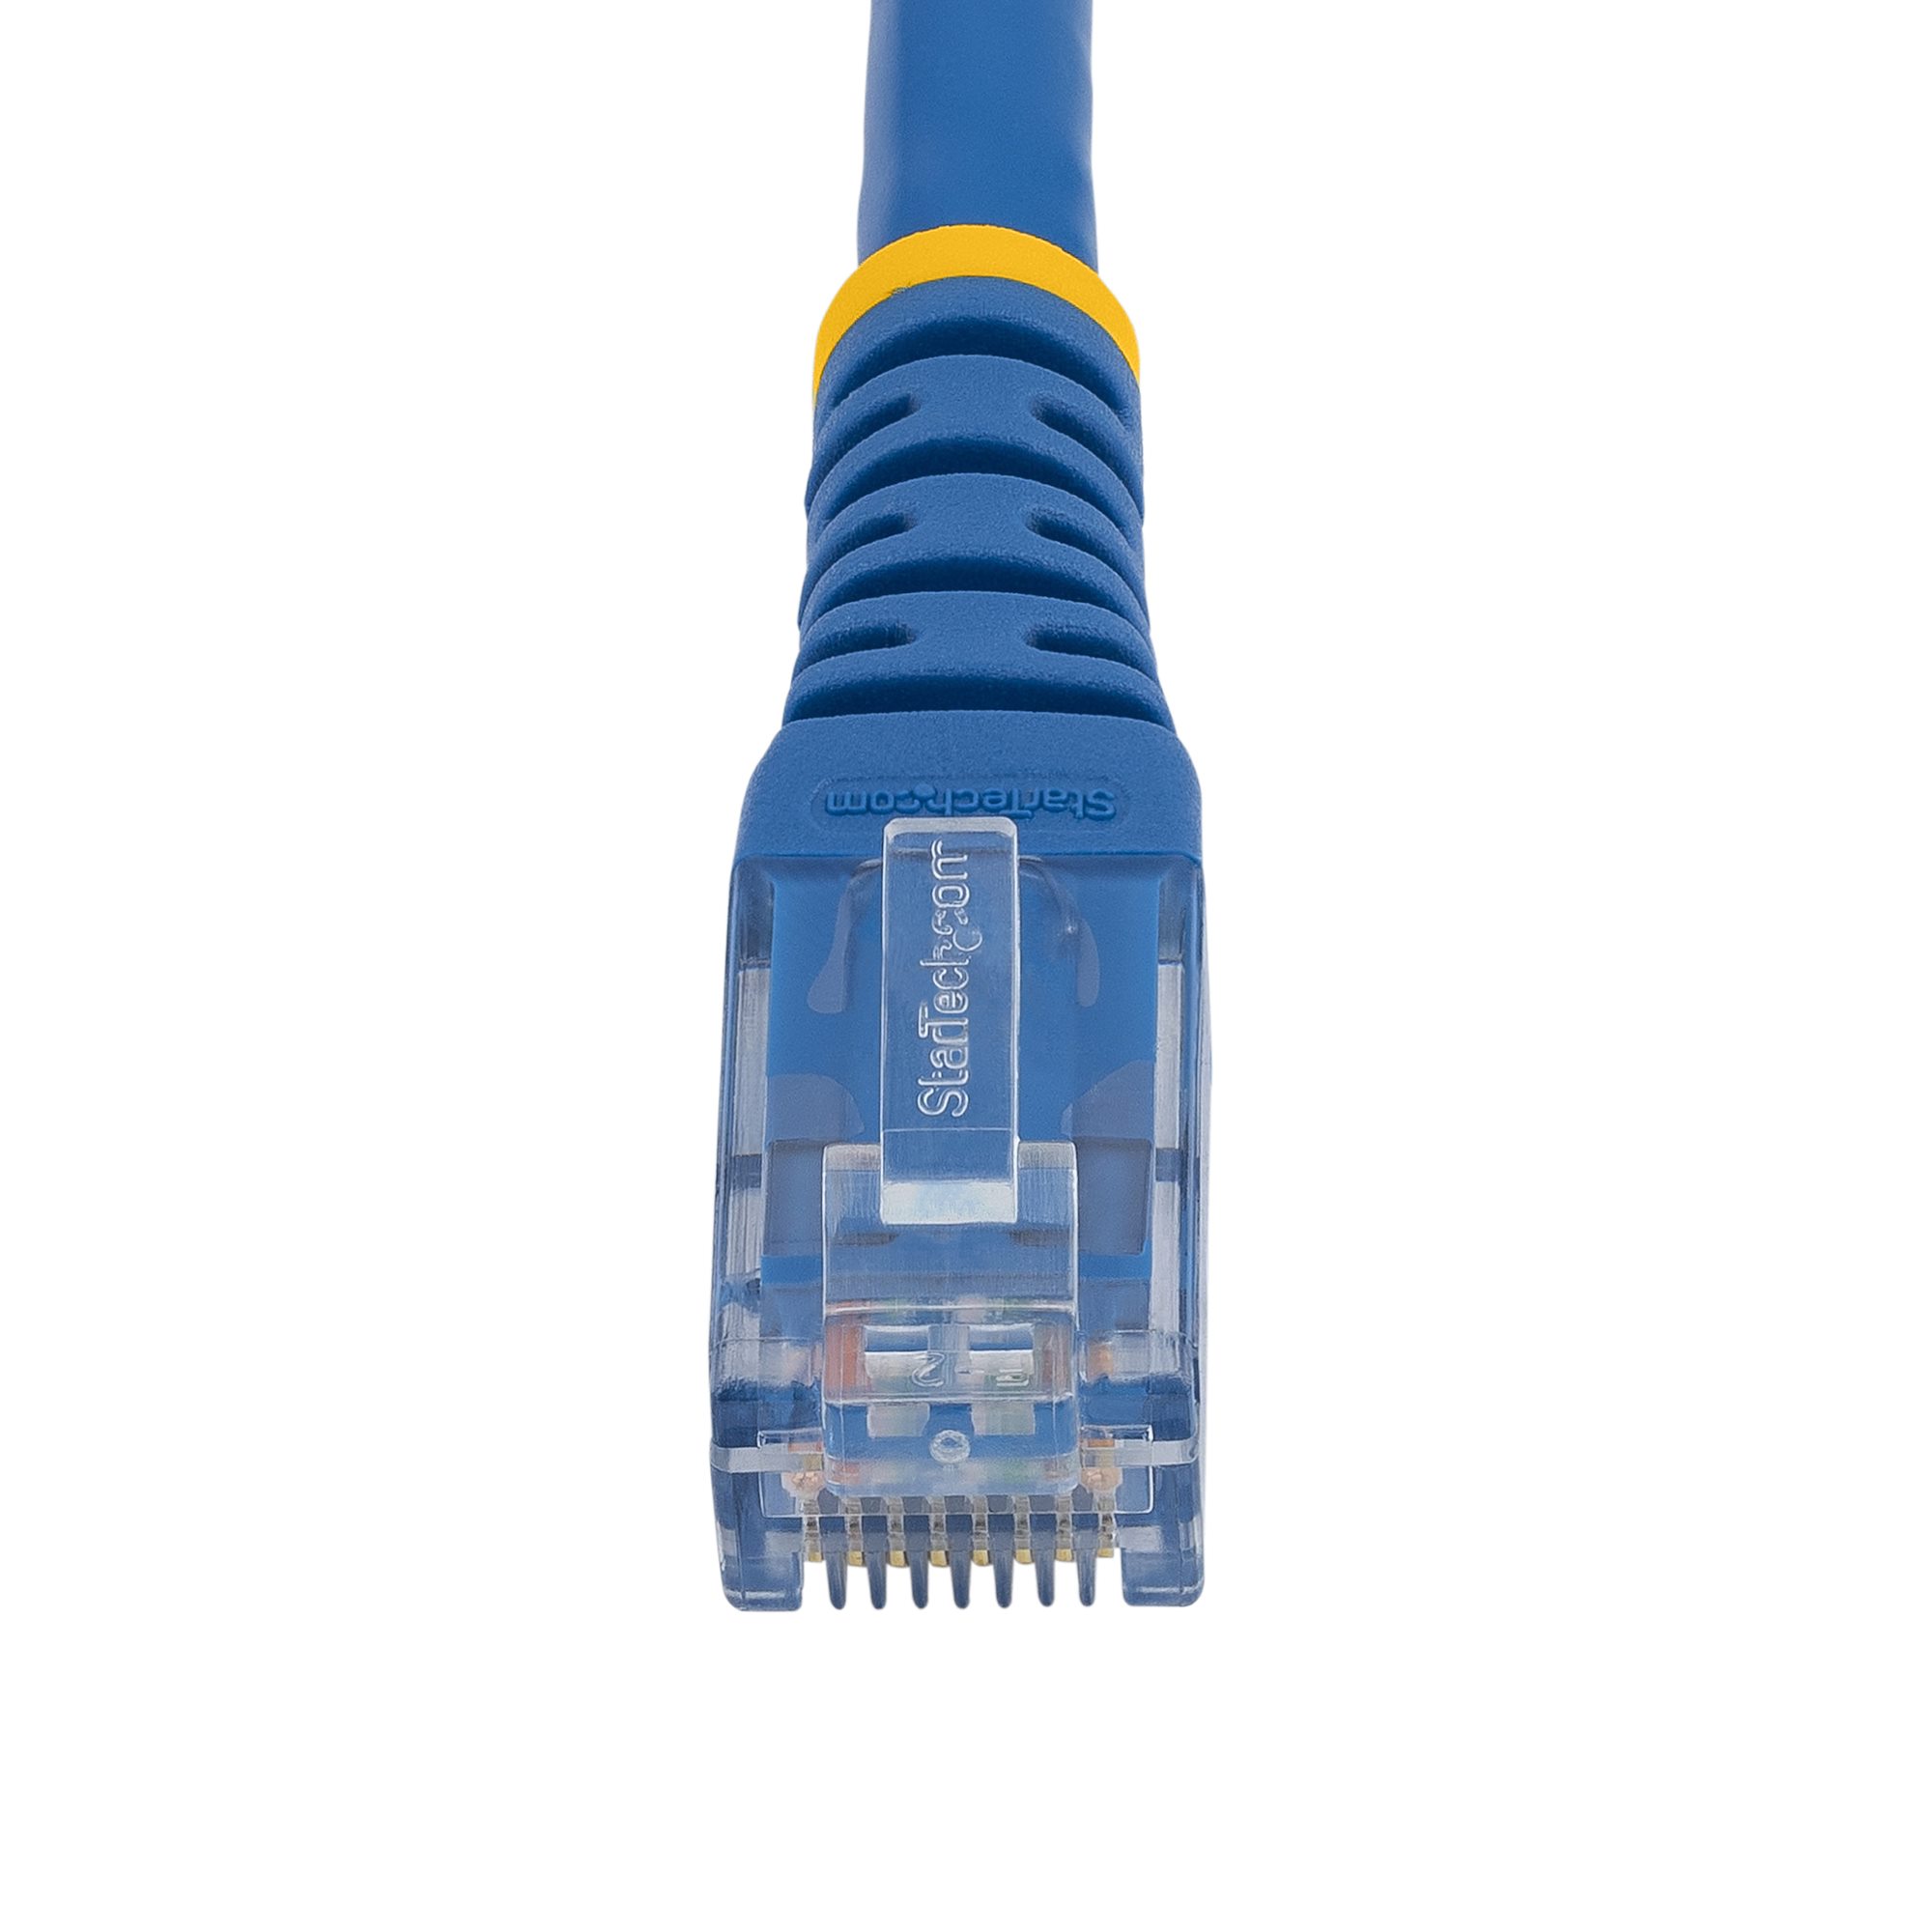 Câble Ethernet KOMELEC Câble ethernet Cat 6 30m SFTP blanc